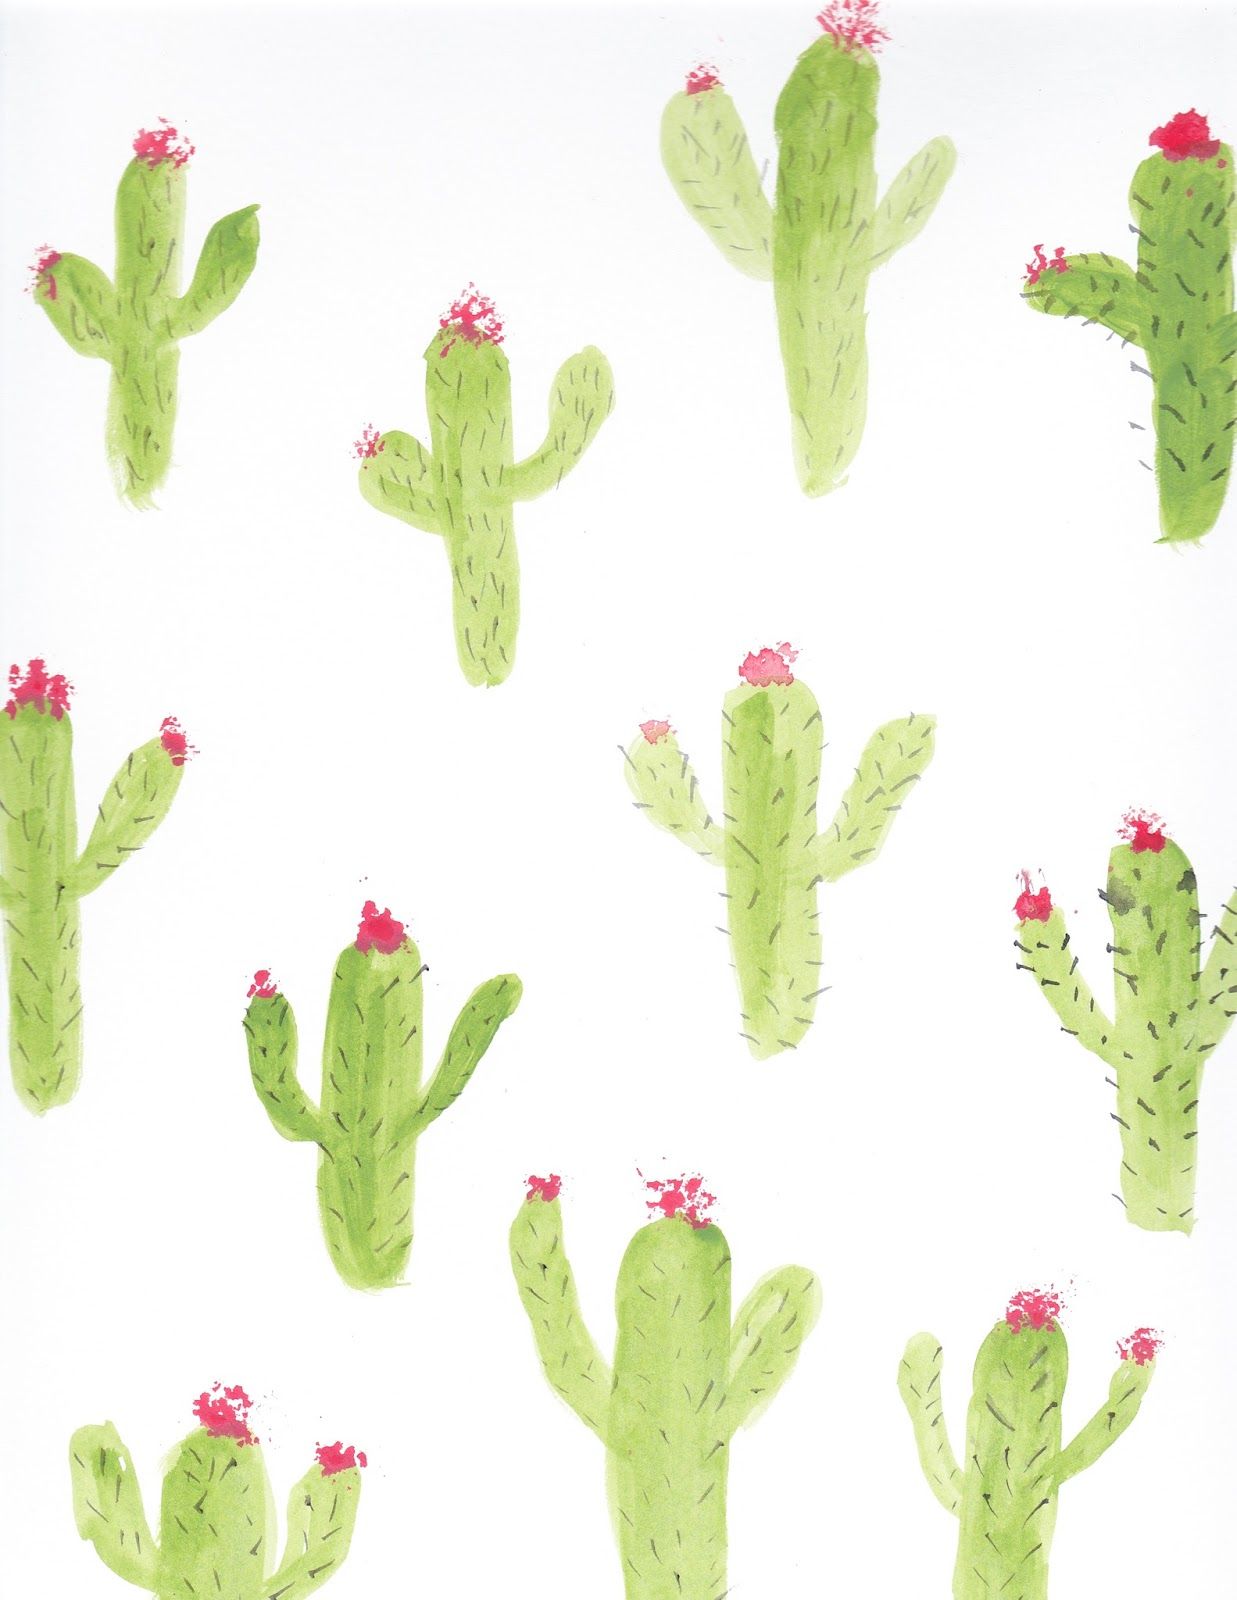 süße kaktus tapete,kaktus,pflanze,blume,saguaro,sukkulente